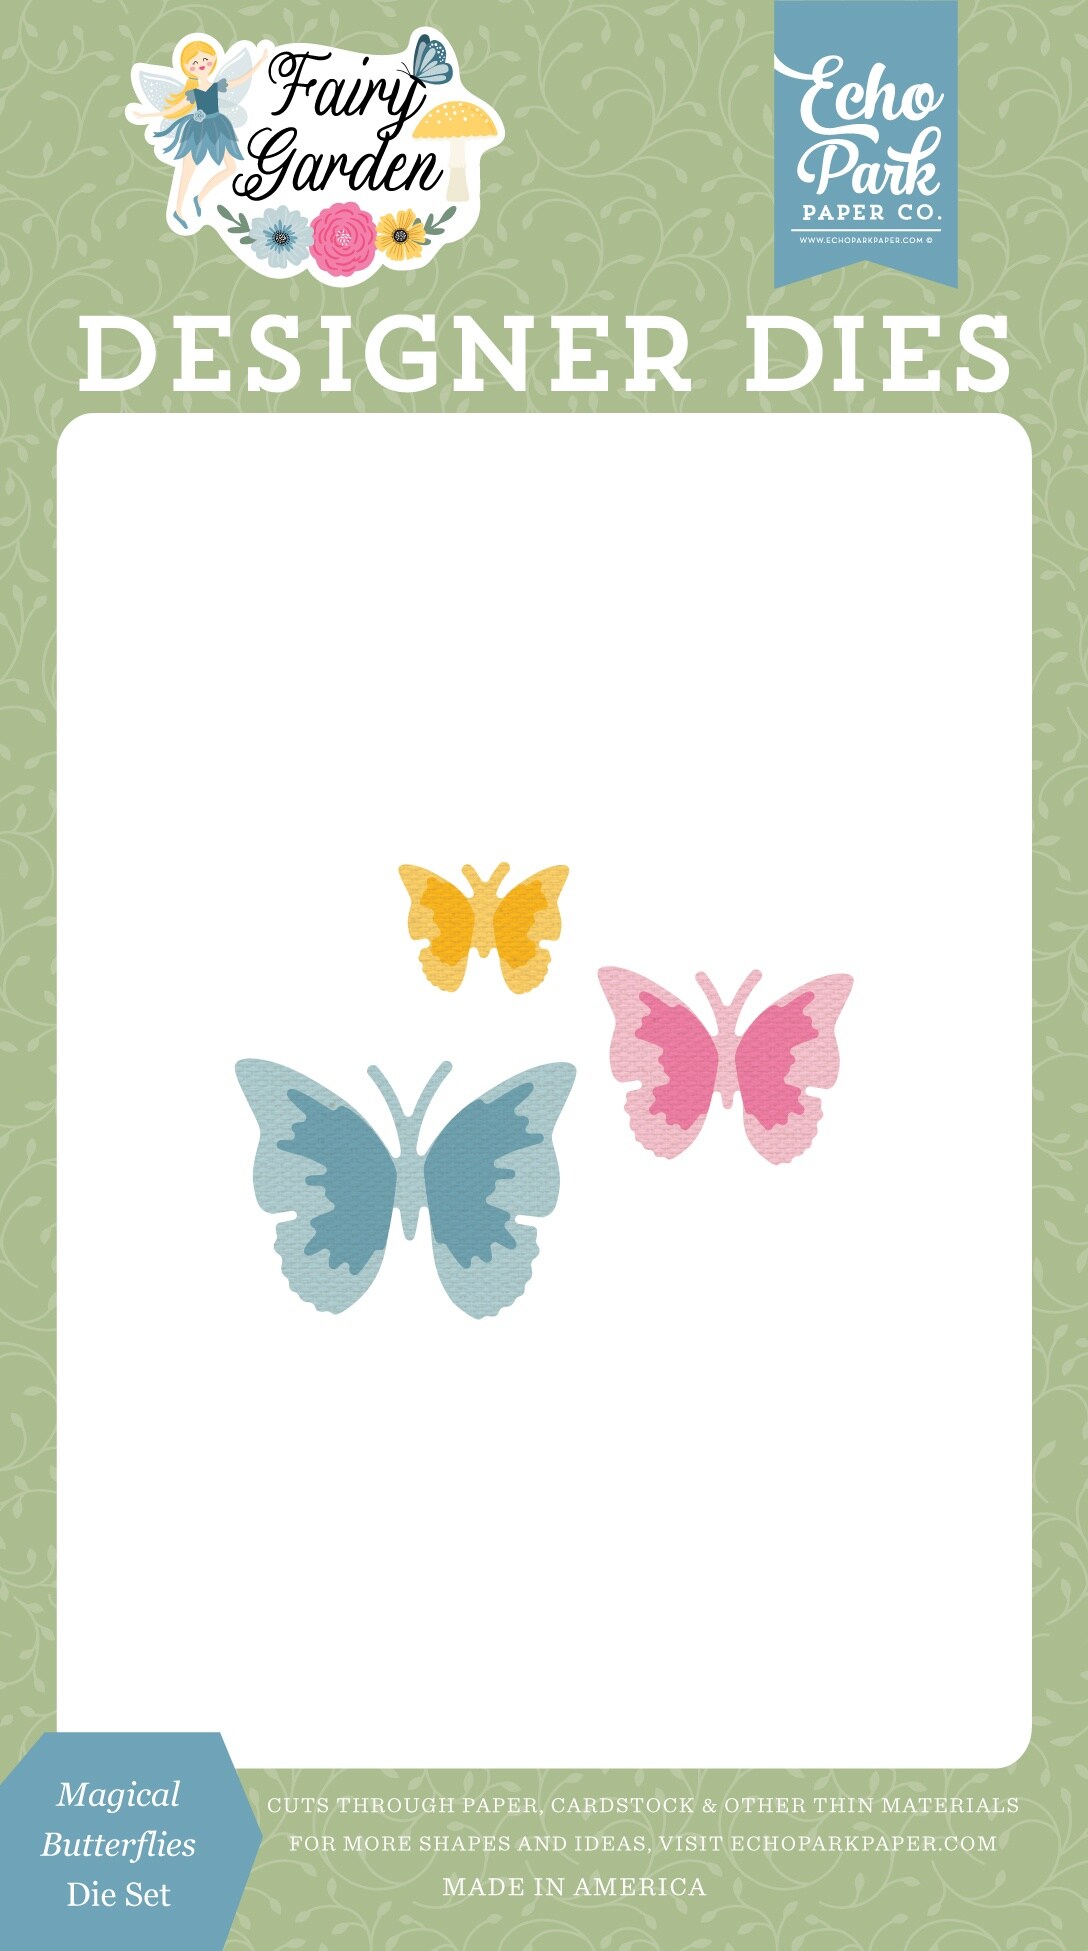 Echo Park Dies-Magical Butterflies, Fairy Garden